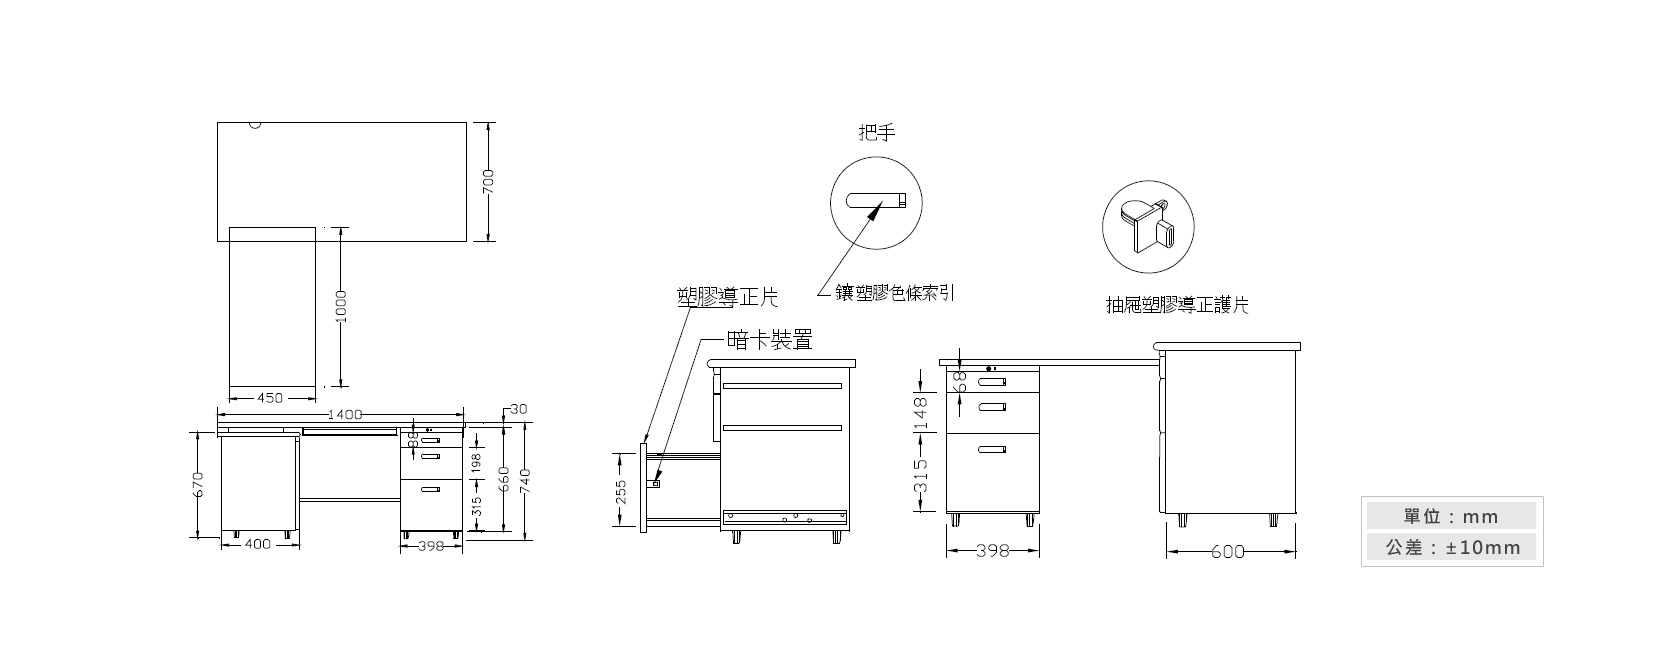 1-9L型辦公桌(附三抽式側邊桌)材質說明